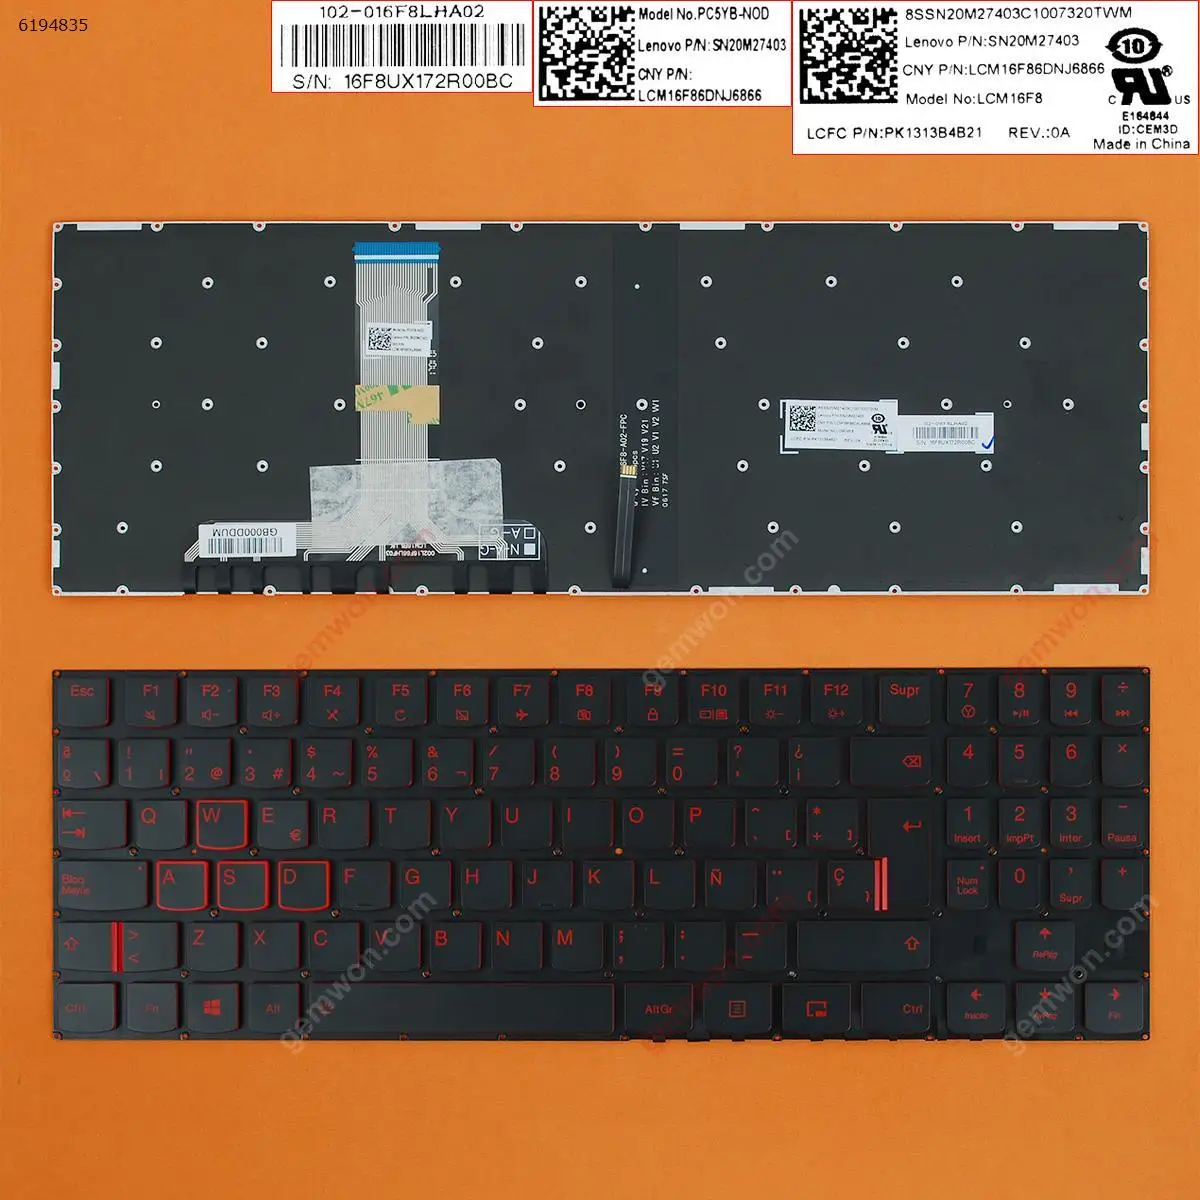 

New Spanish Layout Keyboard for Lenovo Legion Y520-15IKB Y520-15IKBA Y520-15IKBM Y520-15IKBN R720 R720-15IKB Laptop Red Backlit